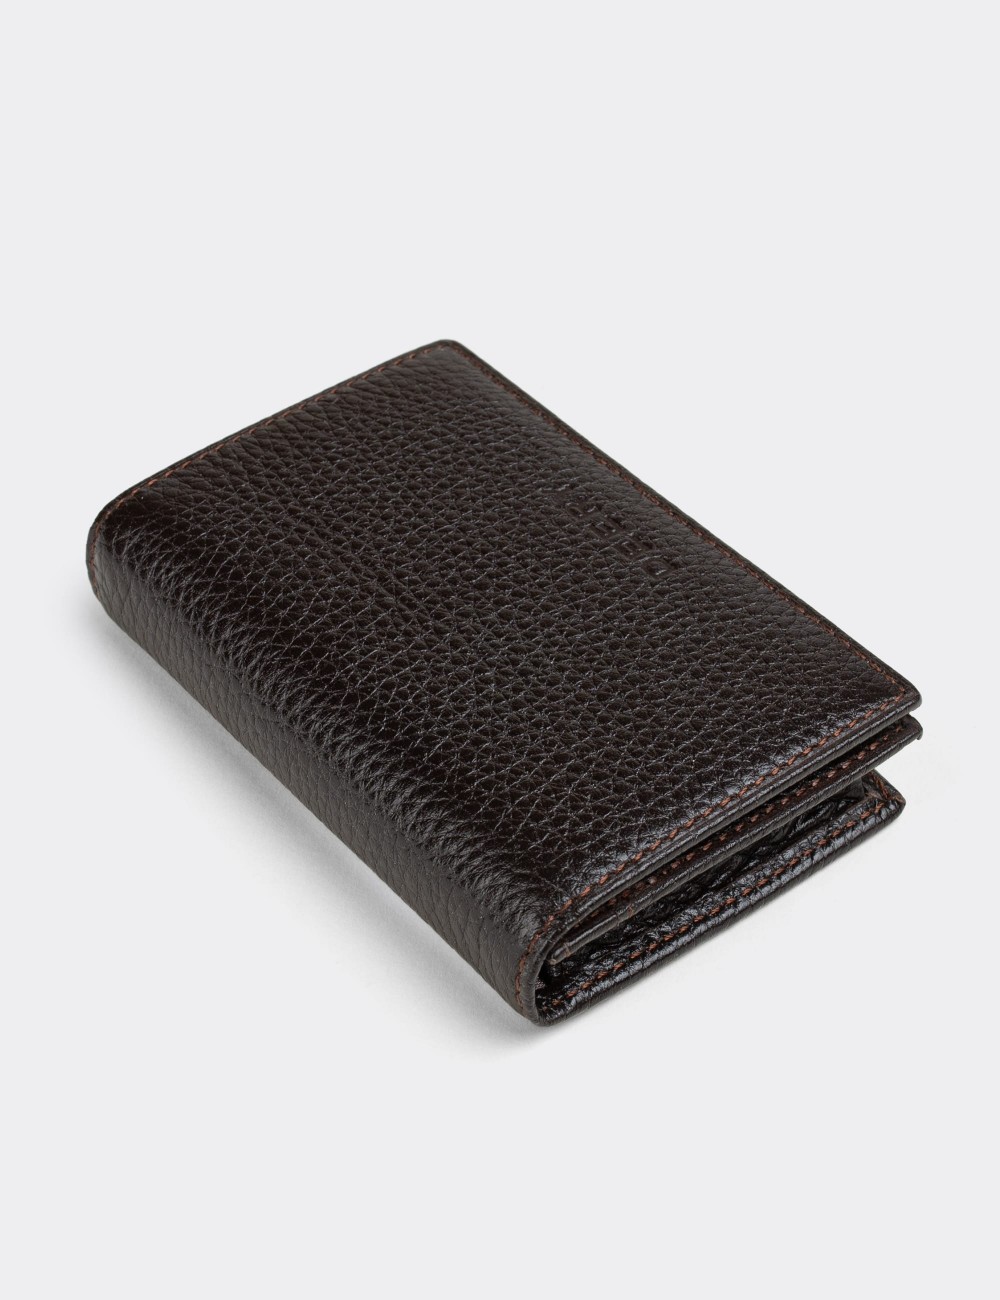  Leather Brown Men's Wallet - 00585MKHVZ01